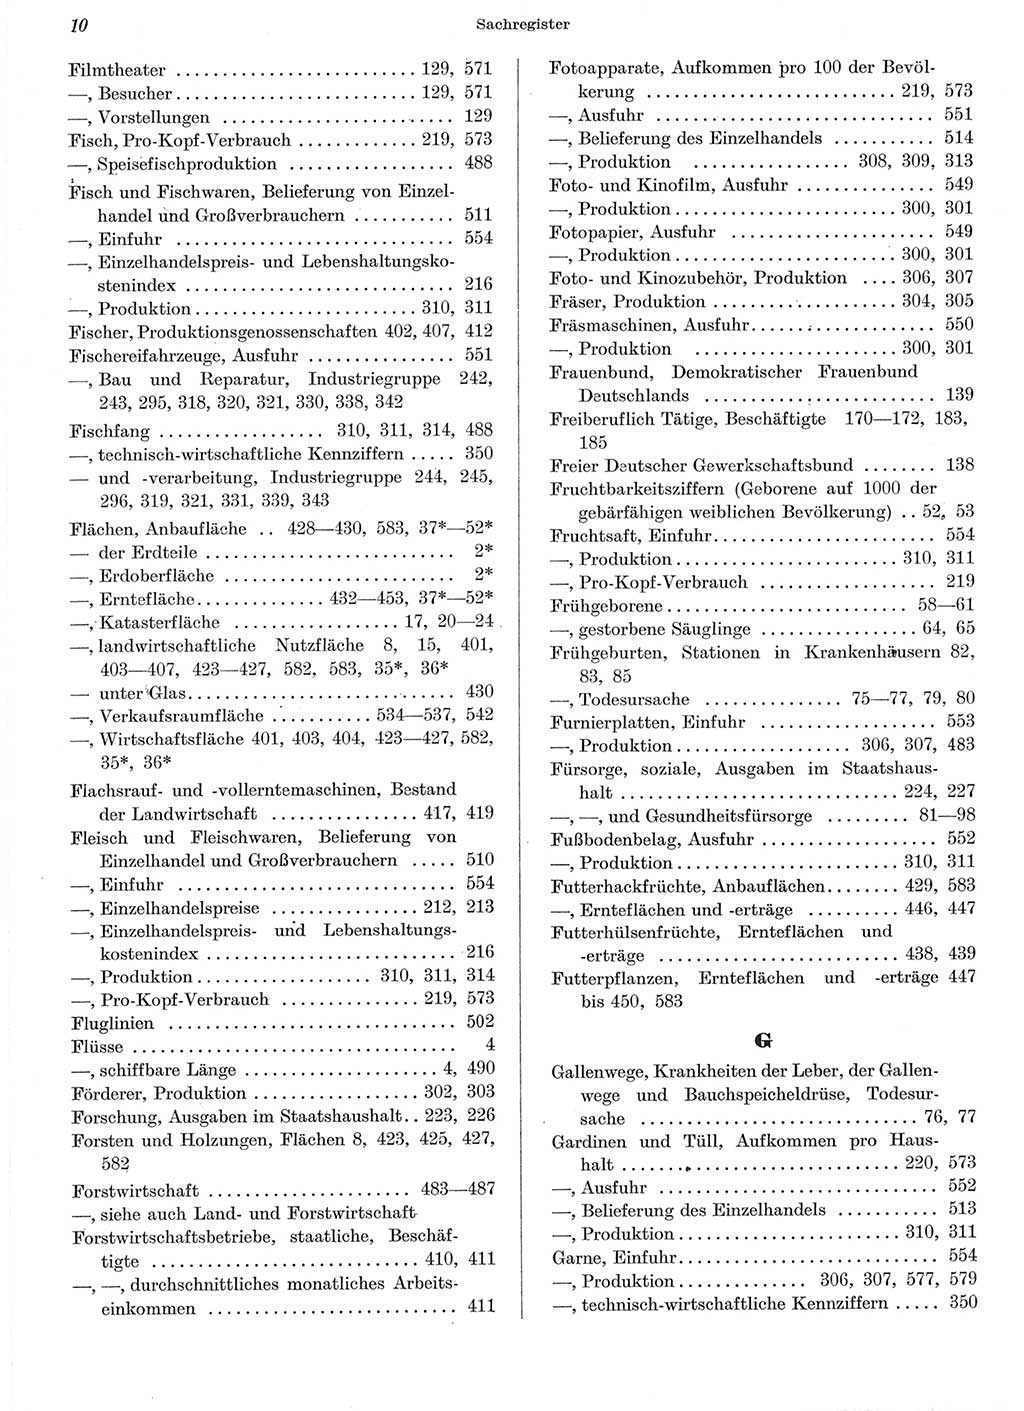 Statistisches Jahrbuch der Deutschen Demokratischen Republik (DDR) 1962, Seite 10 (Stat. Jb. DDR 1962, S. 10)